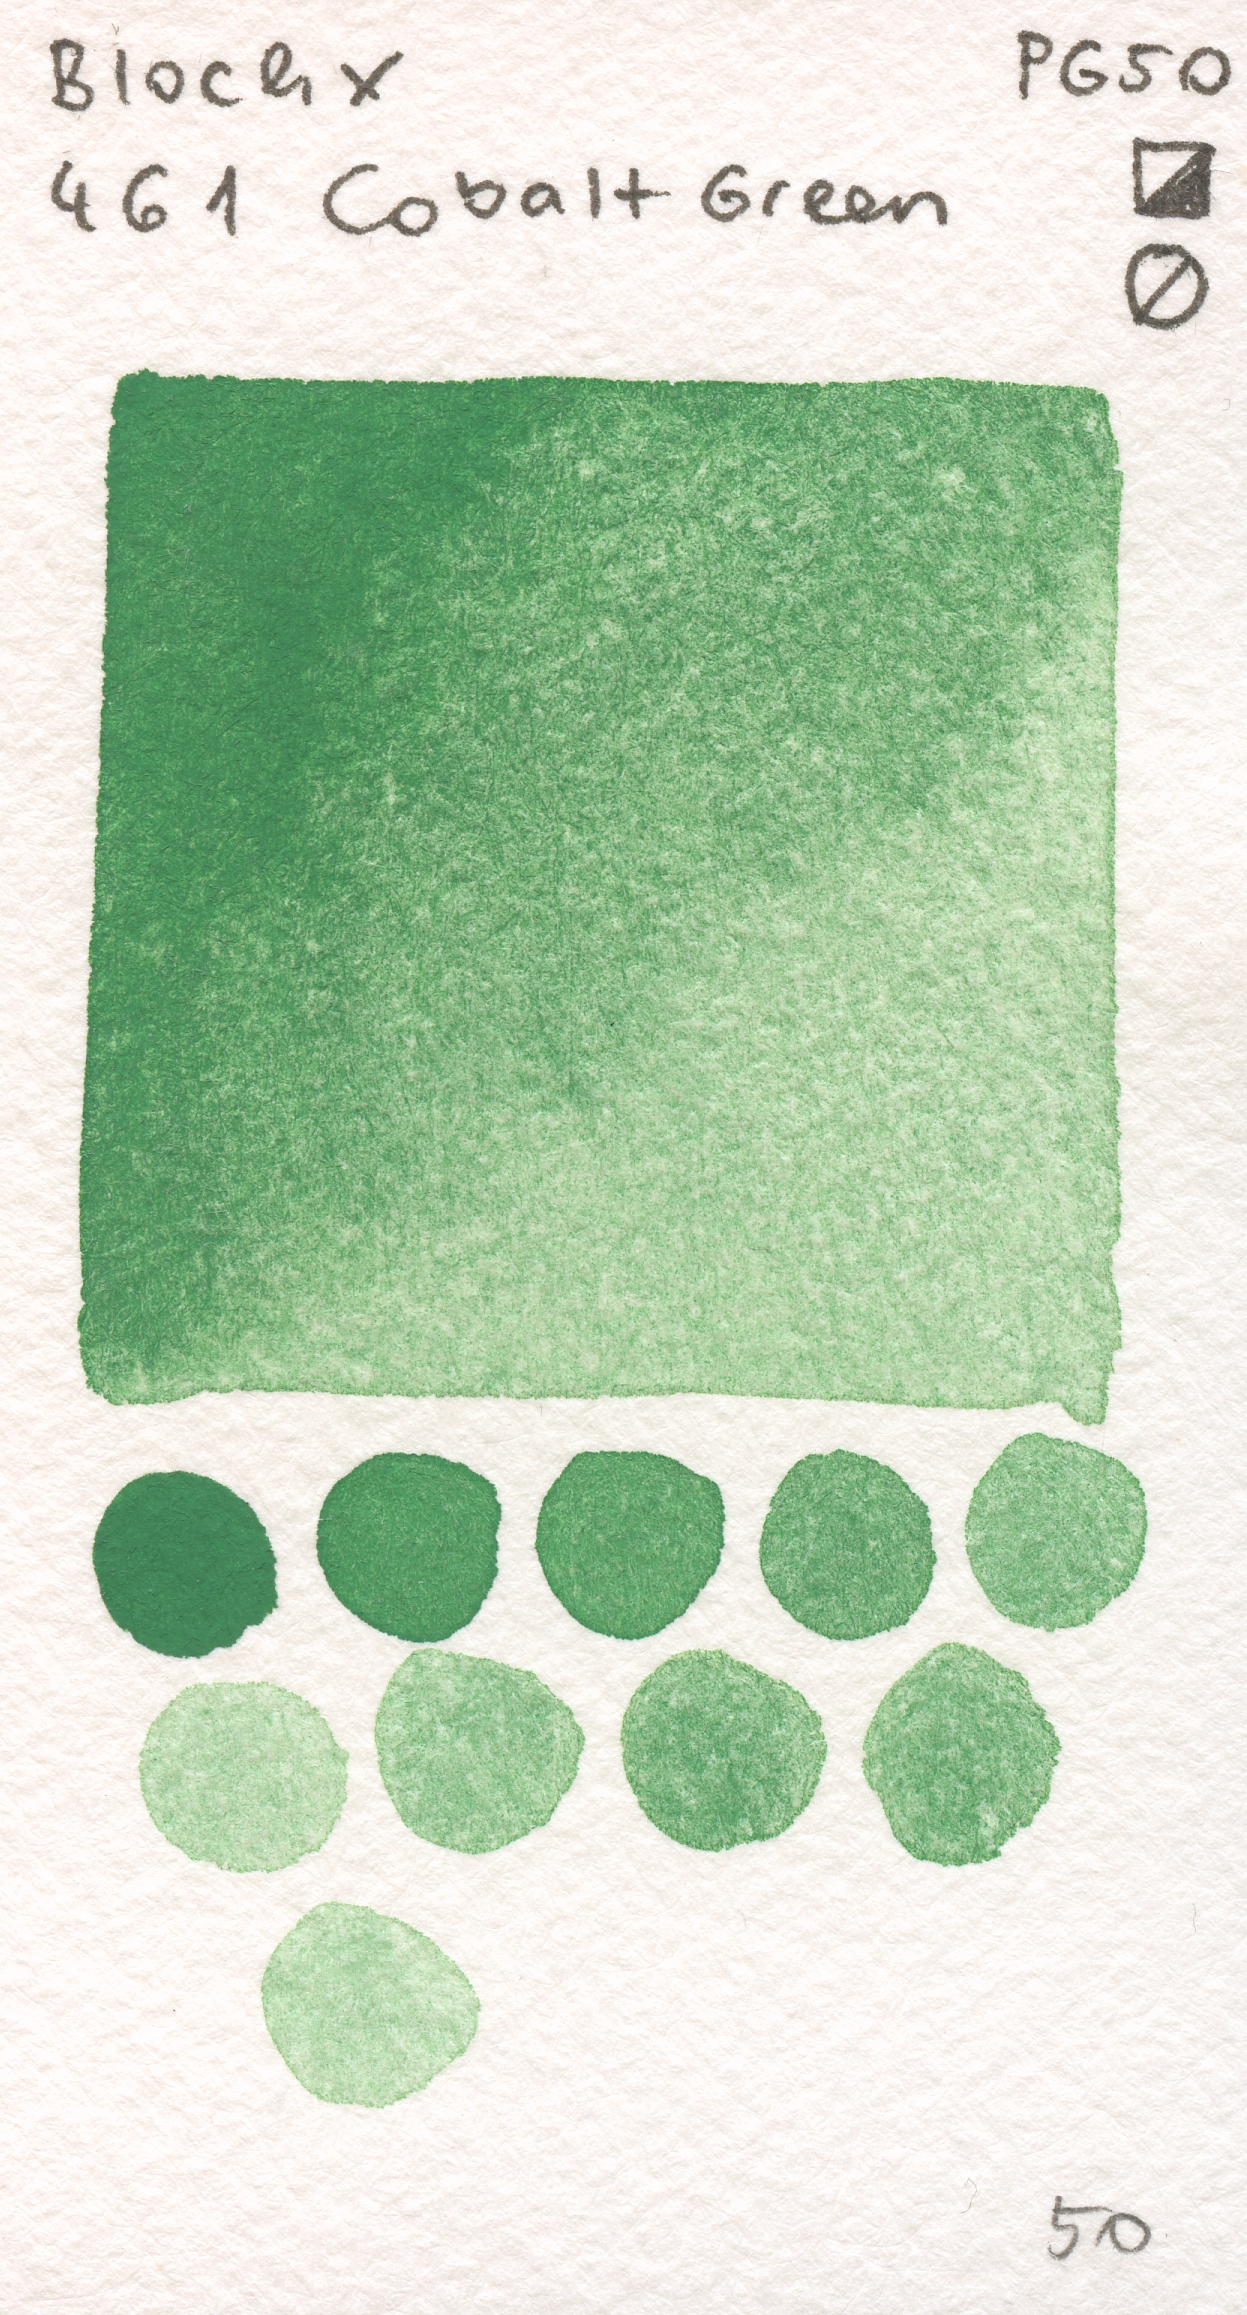 Blockx Aquarelles 461 Cobalt Green PG50 watercolor swatch